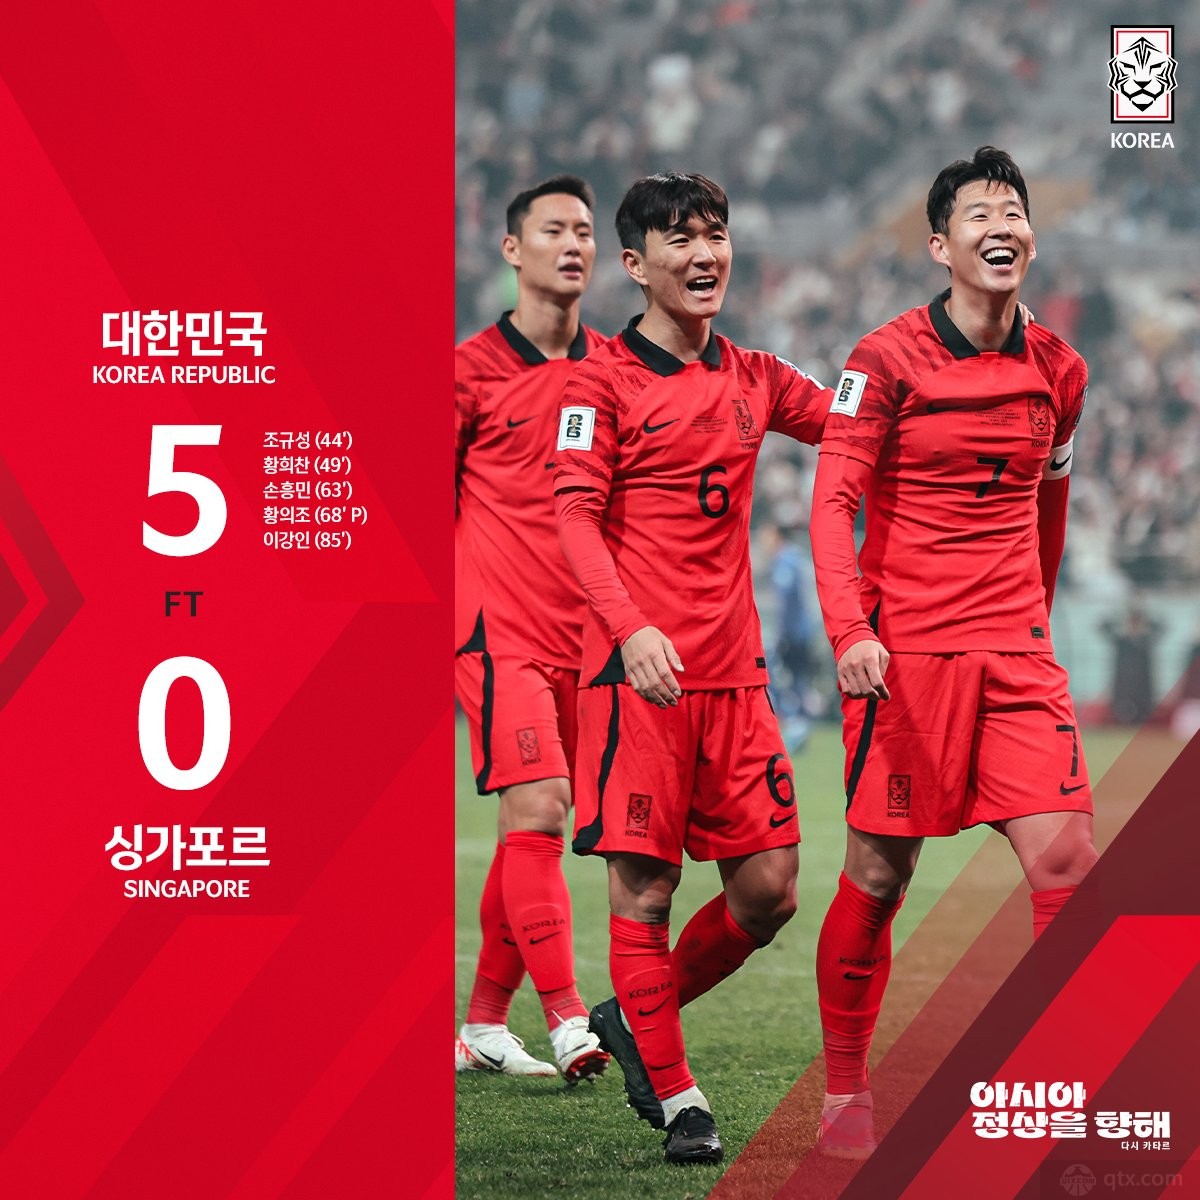 韓國男足5-0大勝新加坡